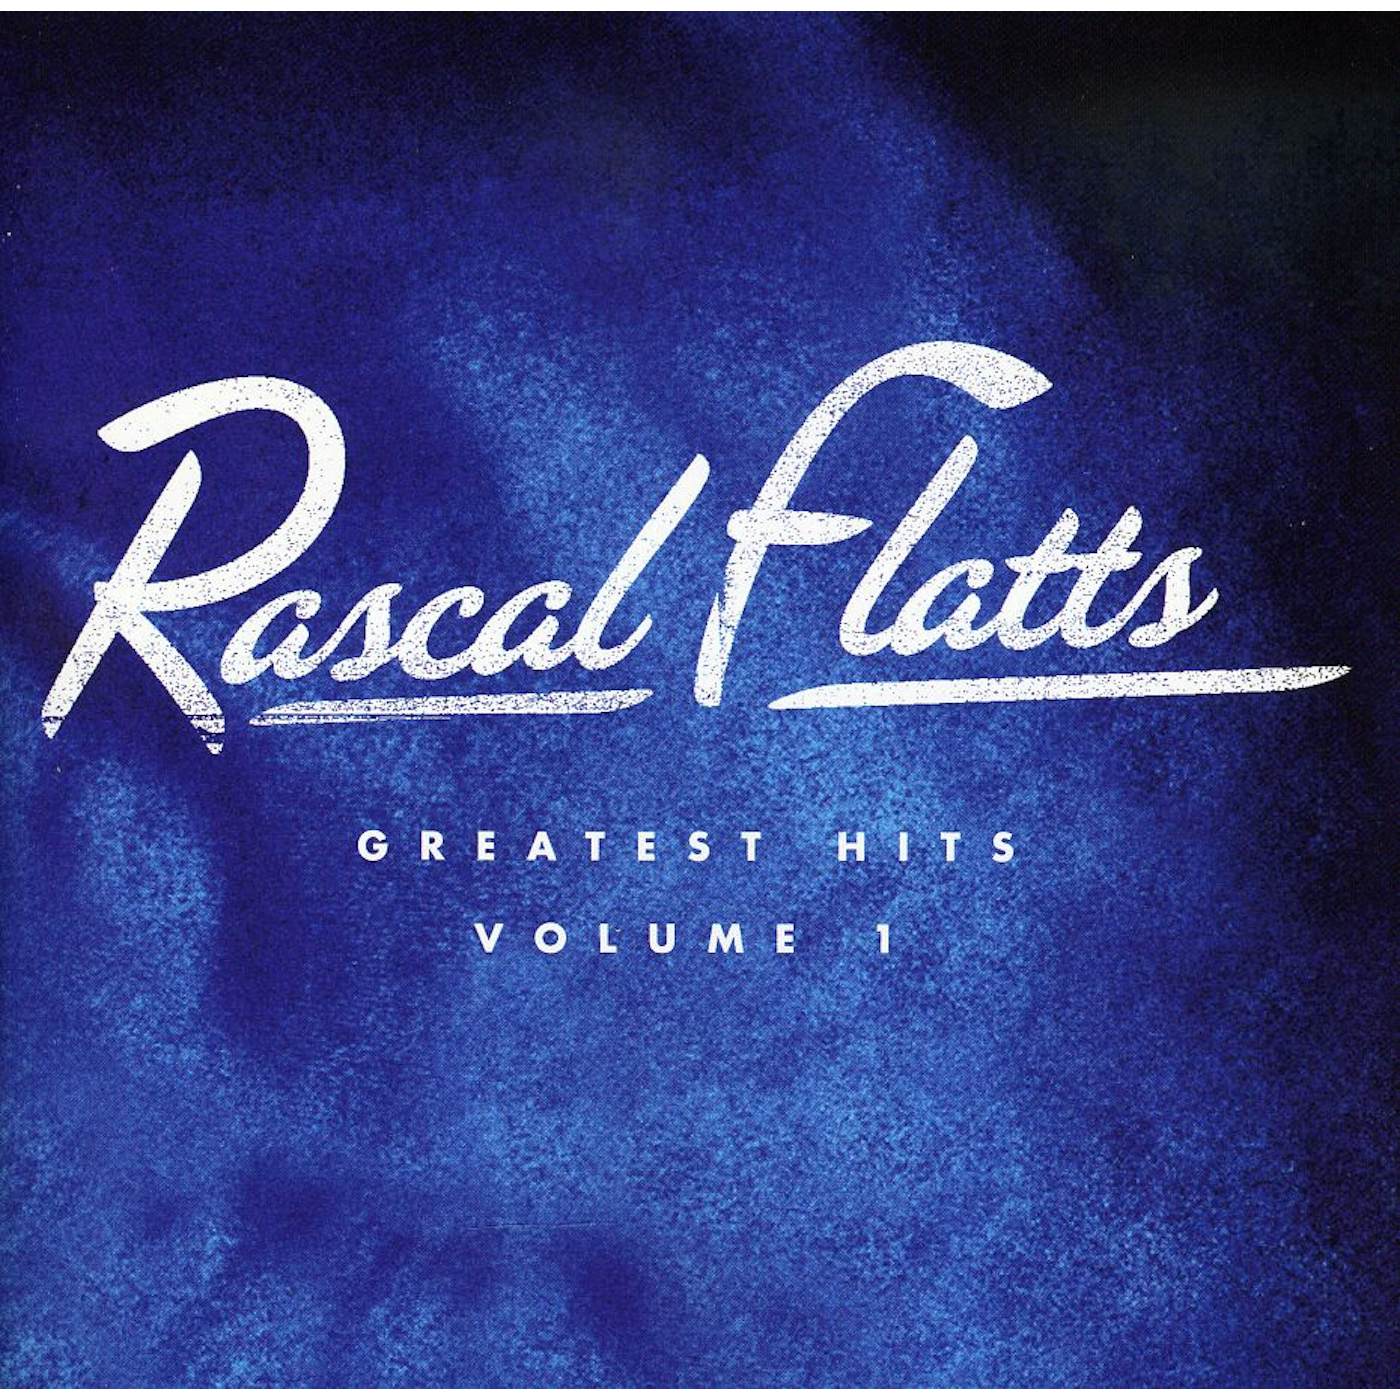 Rascal Flatts GREATEST HITS 1 CD